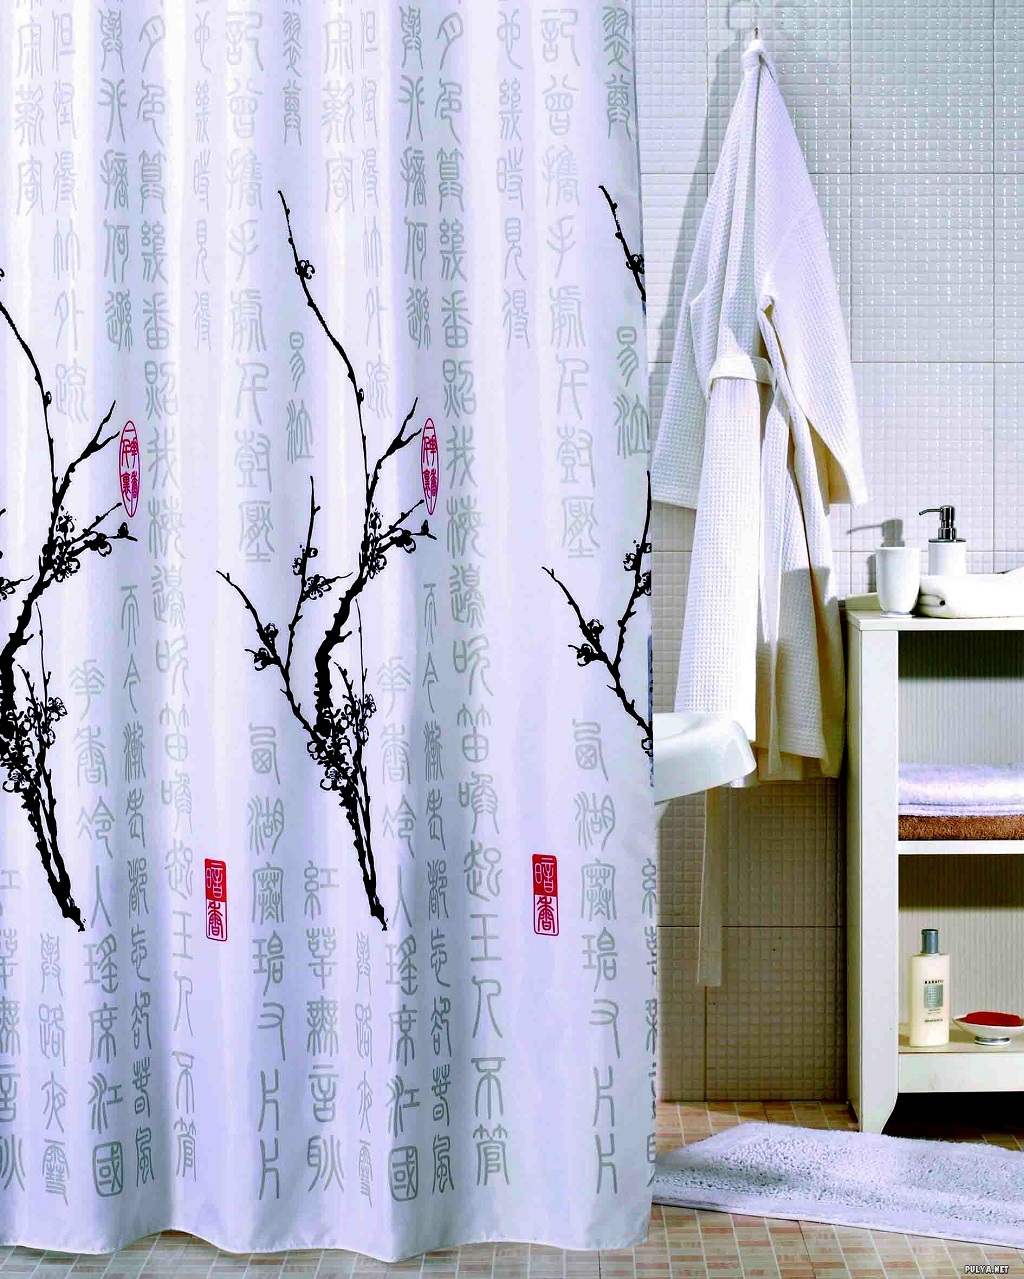 Tekstil-v-interere-----sekretyi-iskusstva-dekorirovaniya 6